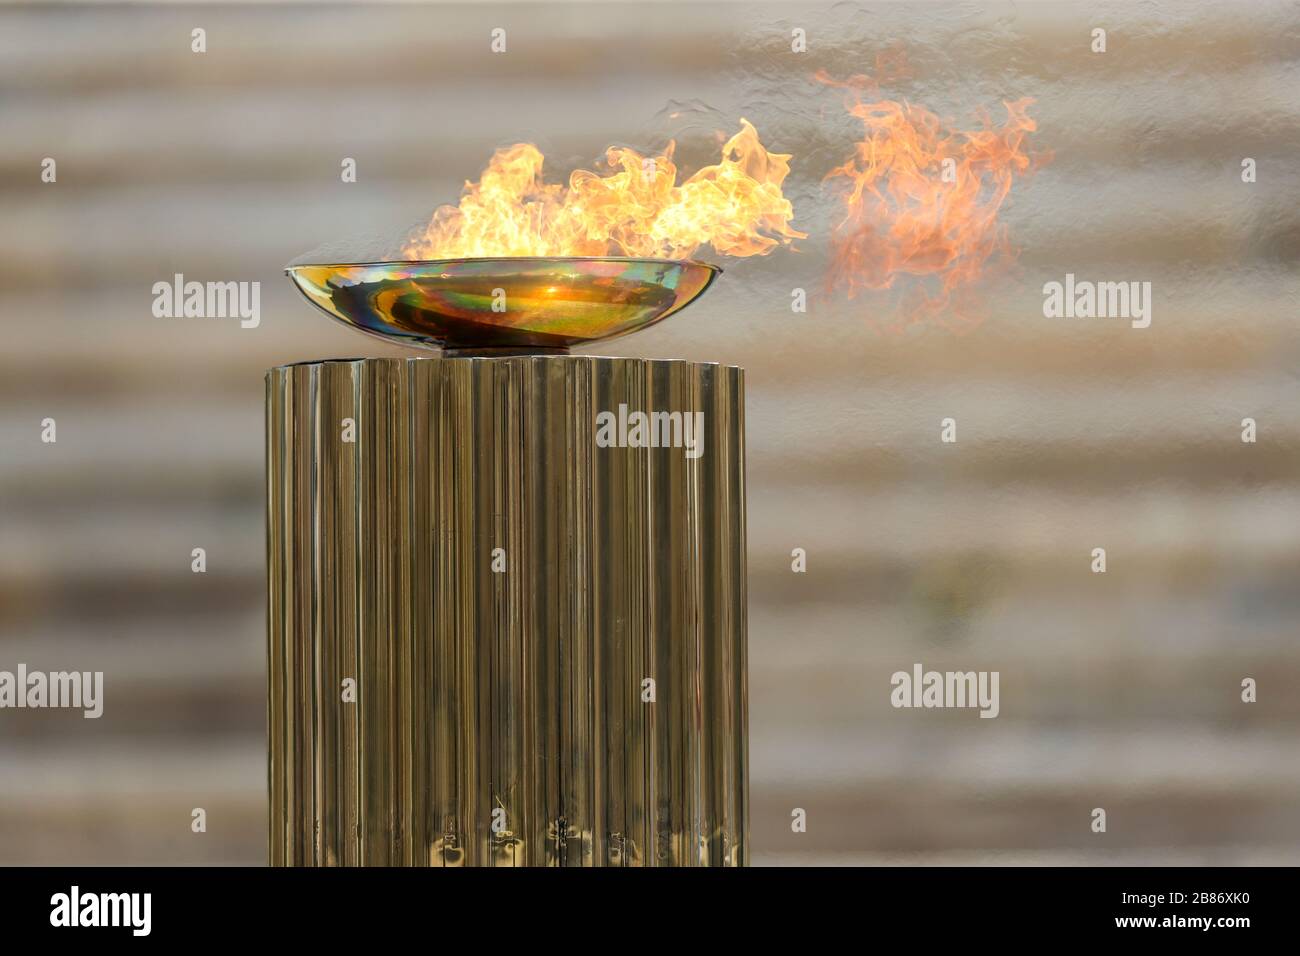 Atenas, Grecia - 19 de marzo de 2020: Ceremonia de entrega de la llama Olímpica para los Juegos Olímpicos de Verano 2020 de Tokio en el Estadio Panathenaic Kallimarmaro Foto de stock